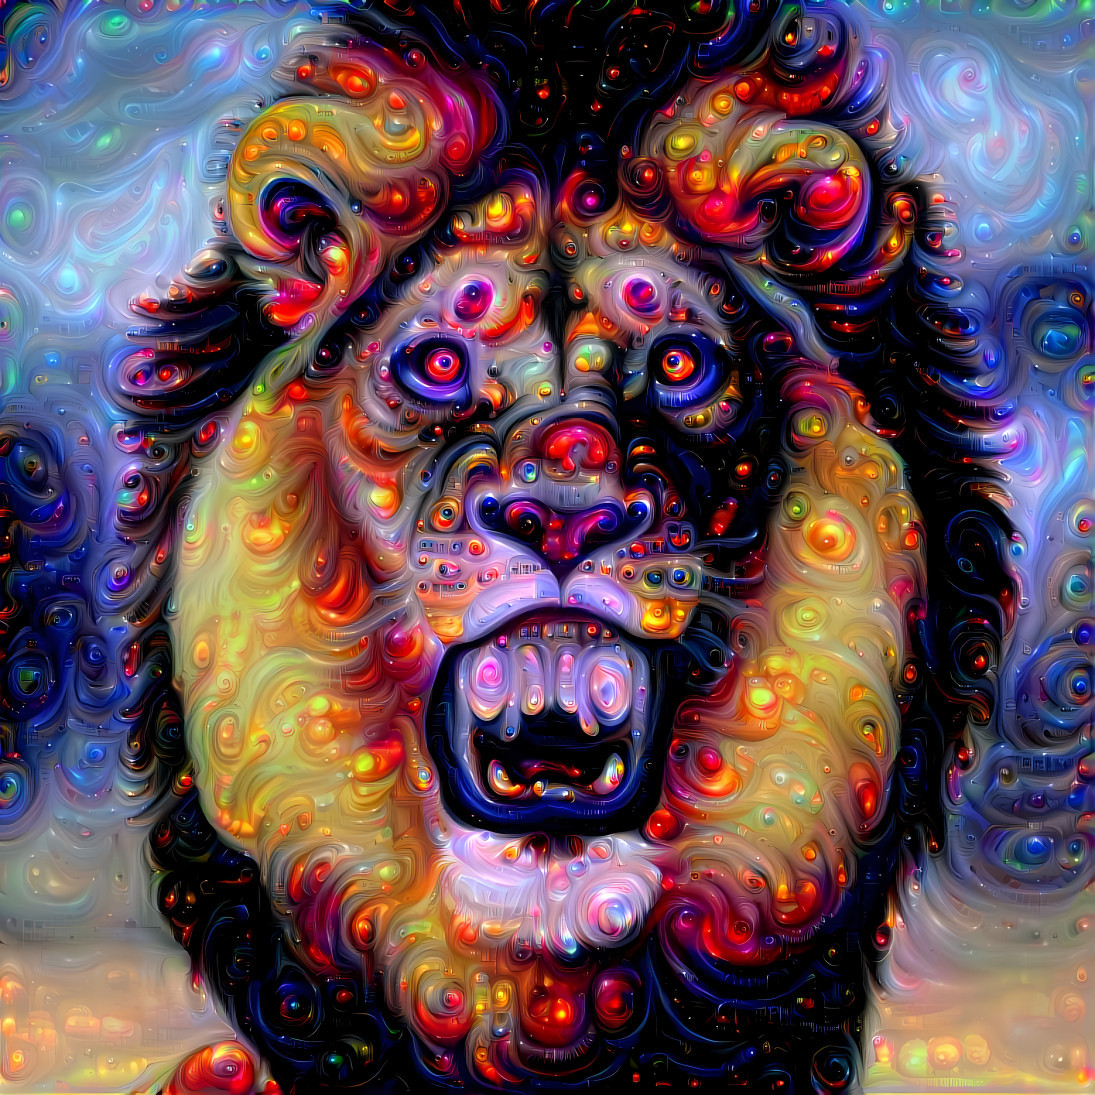 Lion's mighty roar